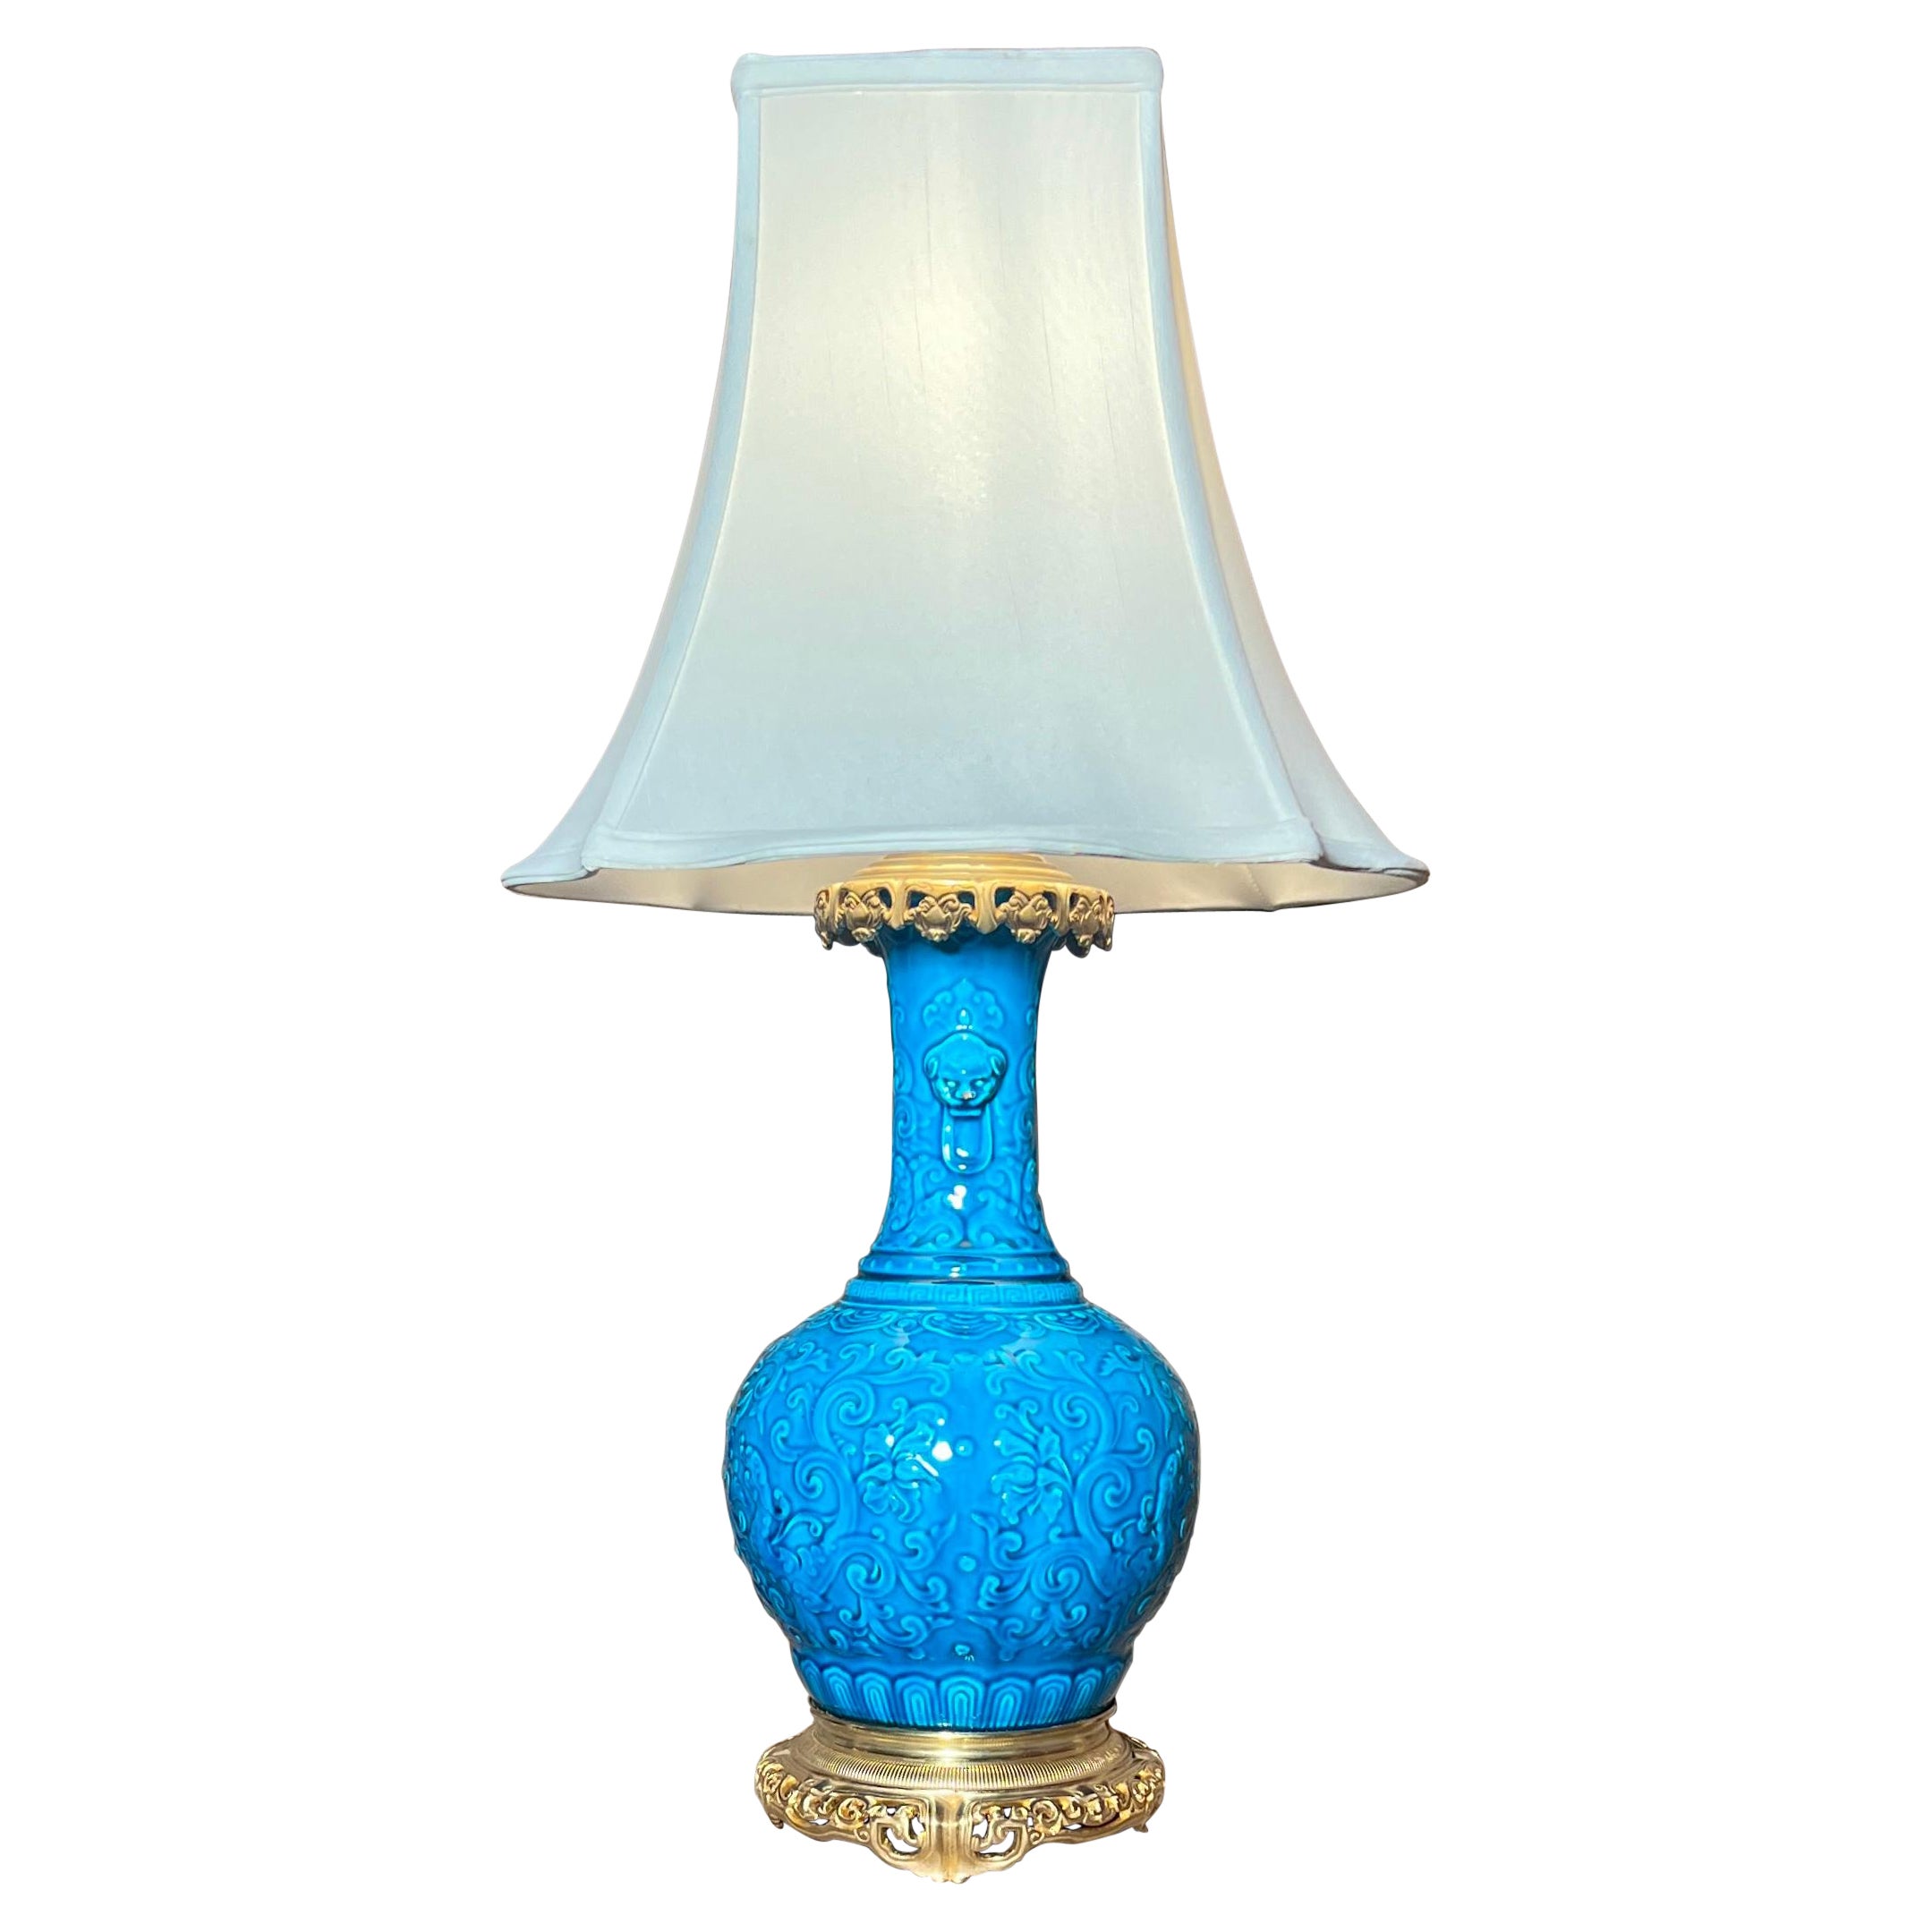 Lampe française ancienne en porcelaine bleue avec montures en bronze doré, vers 1885-1890.